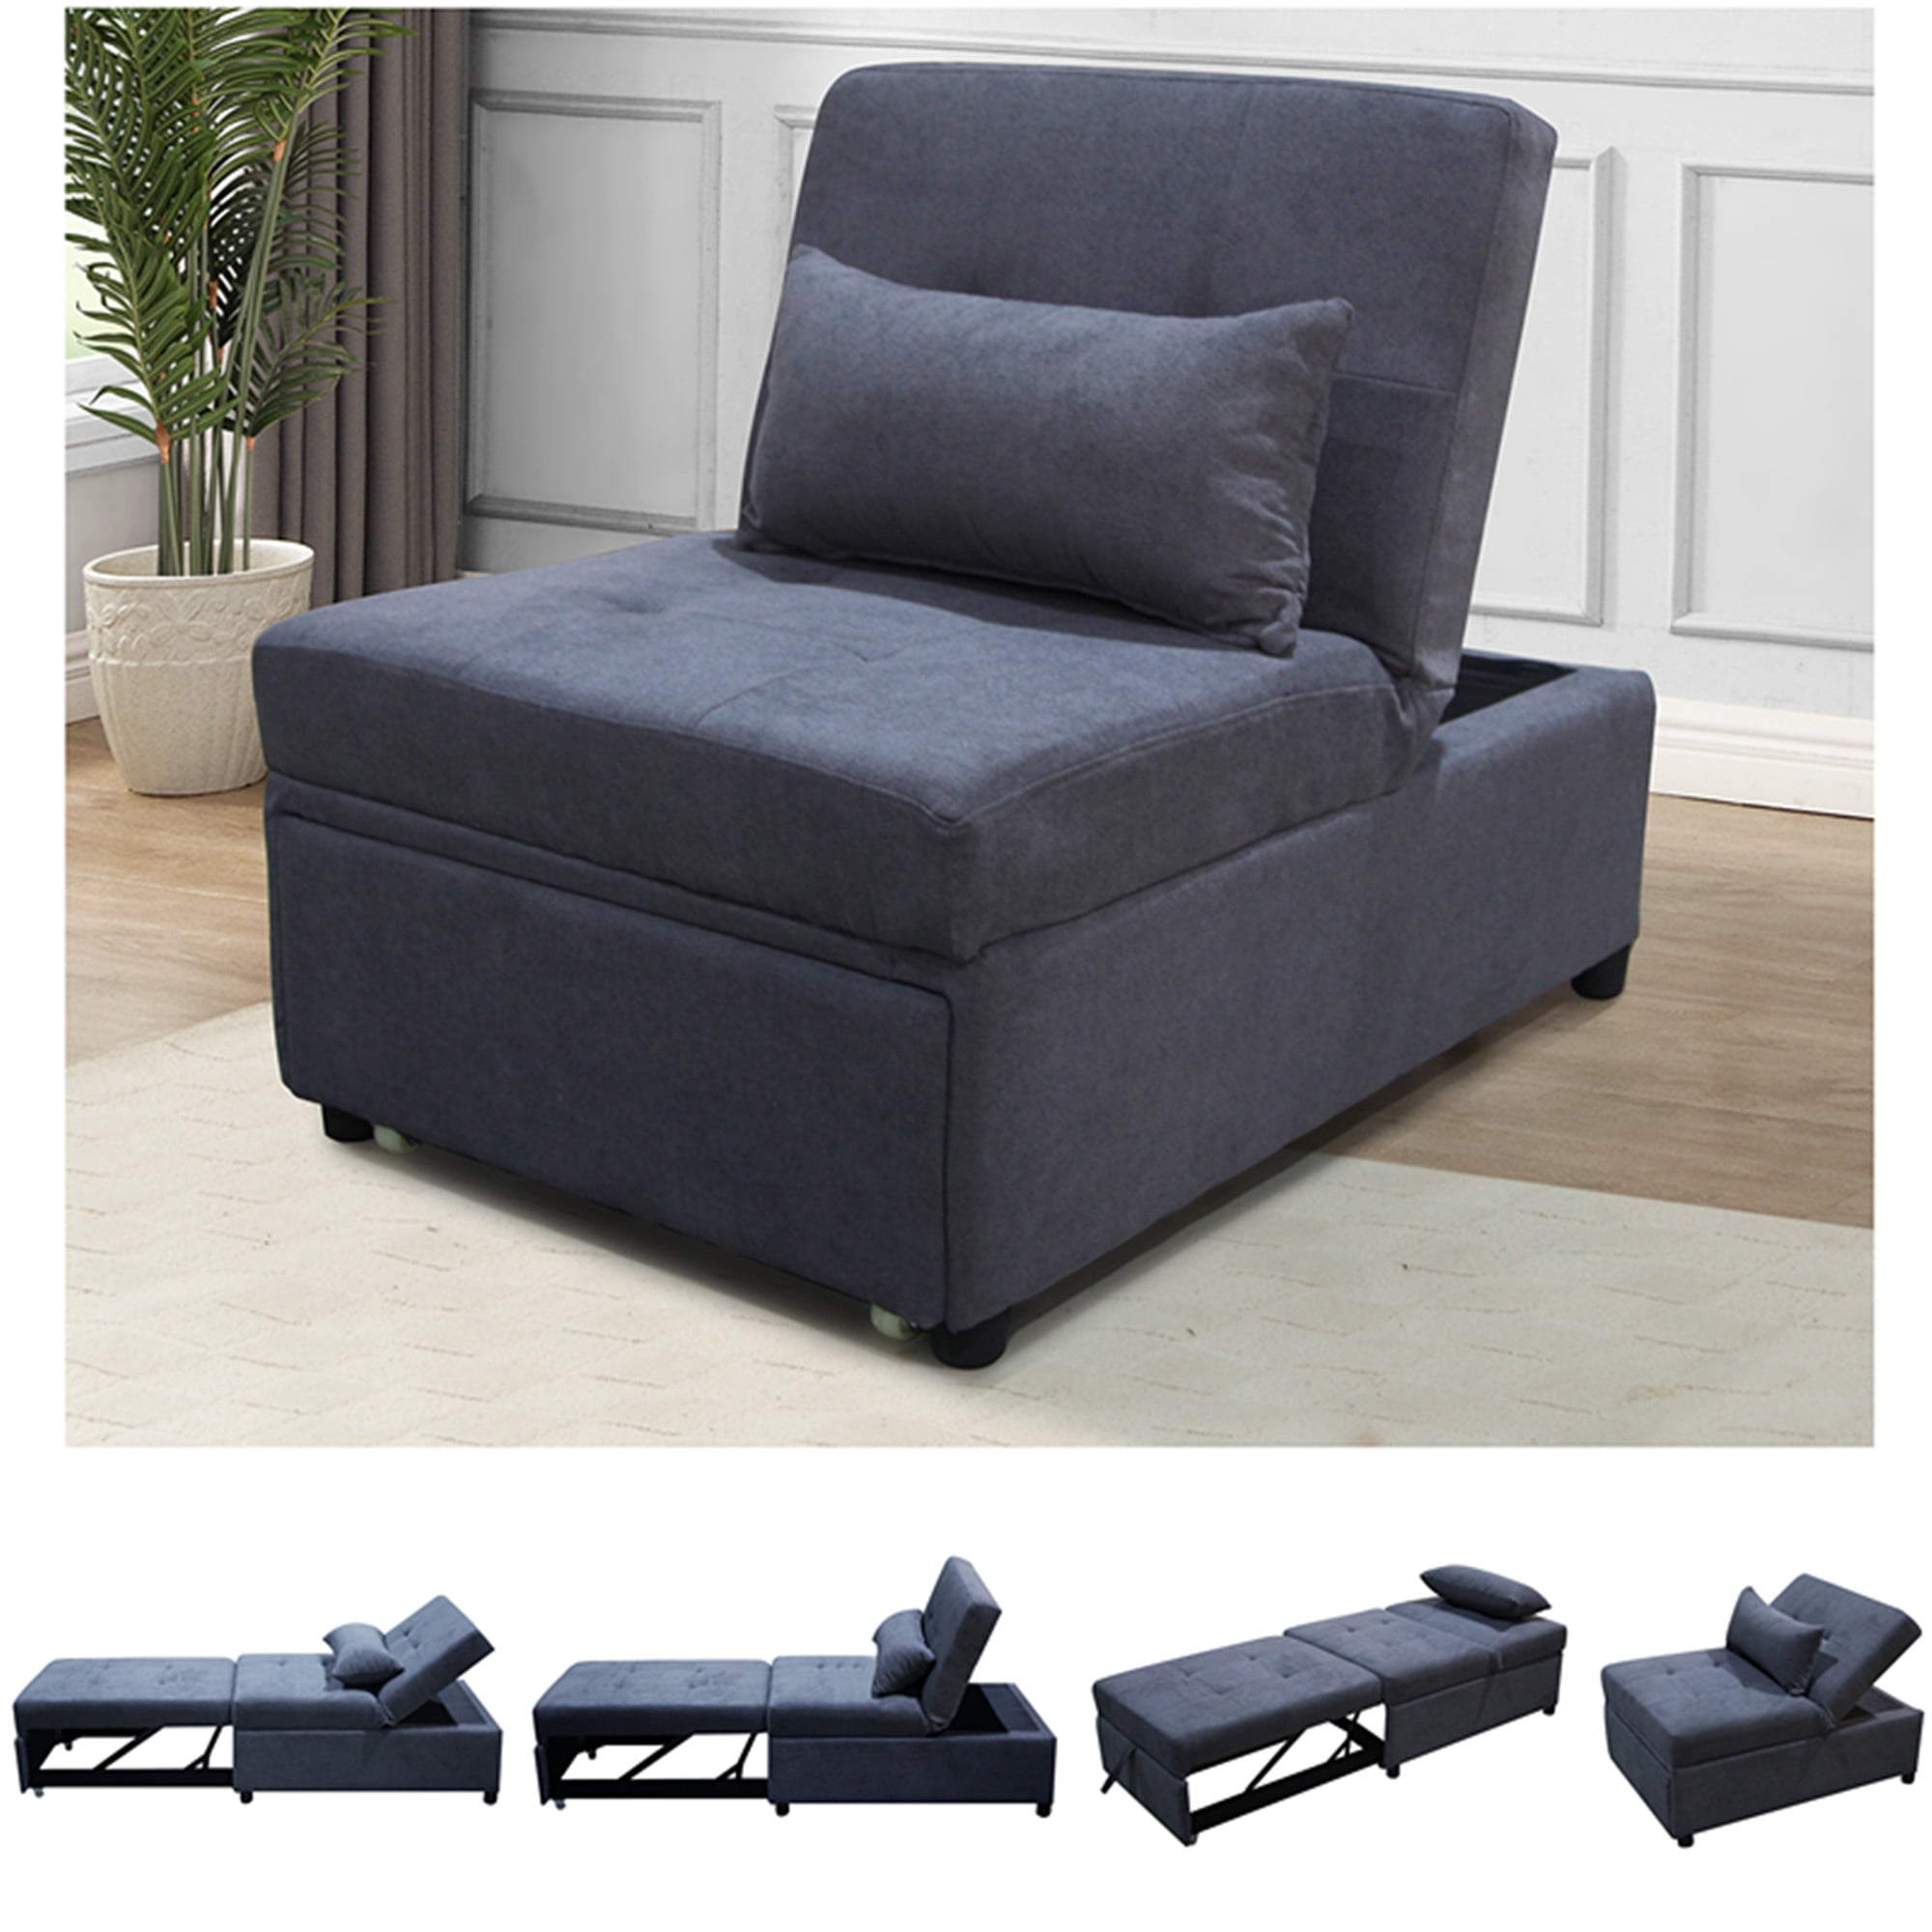 Silla convertible para cama, futón 3 en 1, sofá cama, sofá cama, sofá cama,  sofá cama, sofá de tela, sillón reclinable para apartamentos de espacios